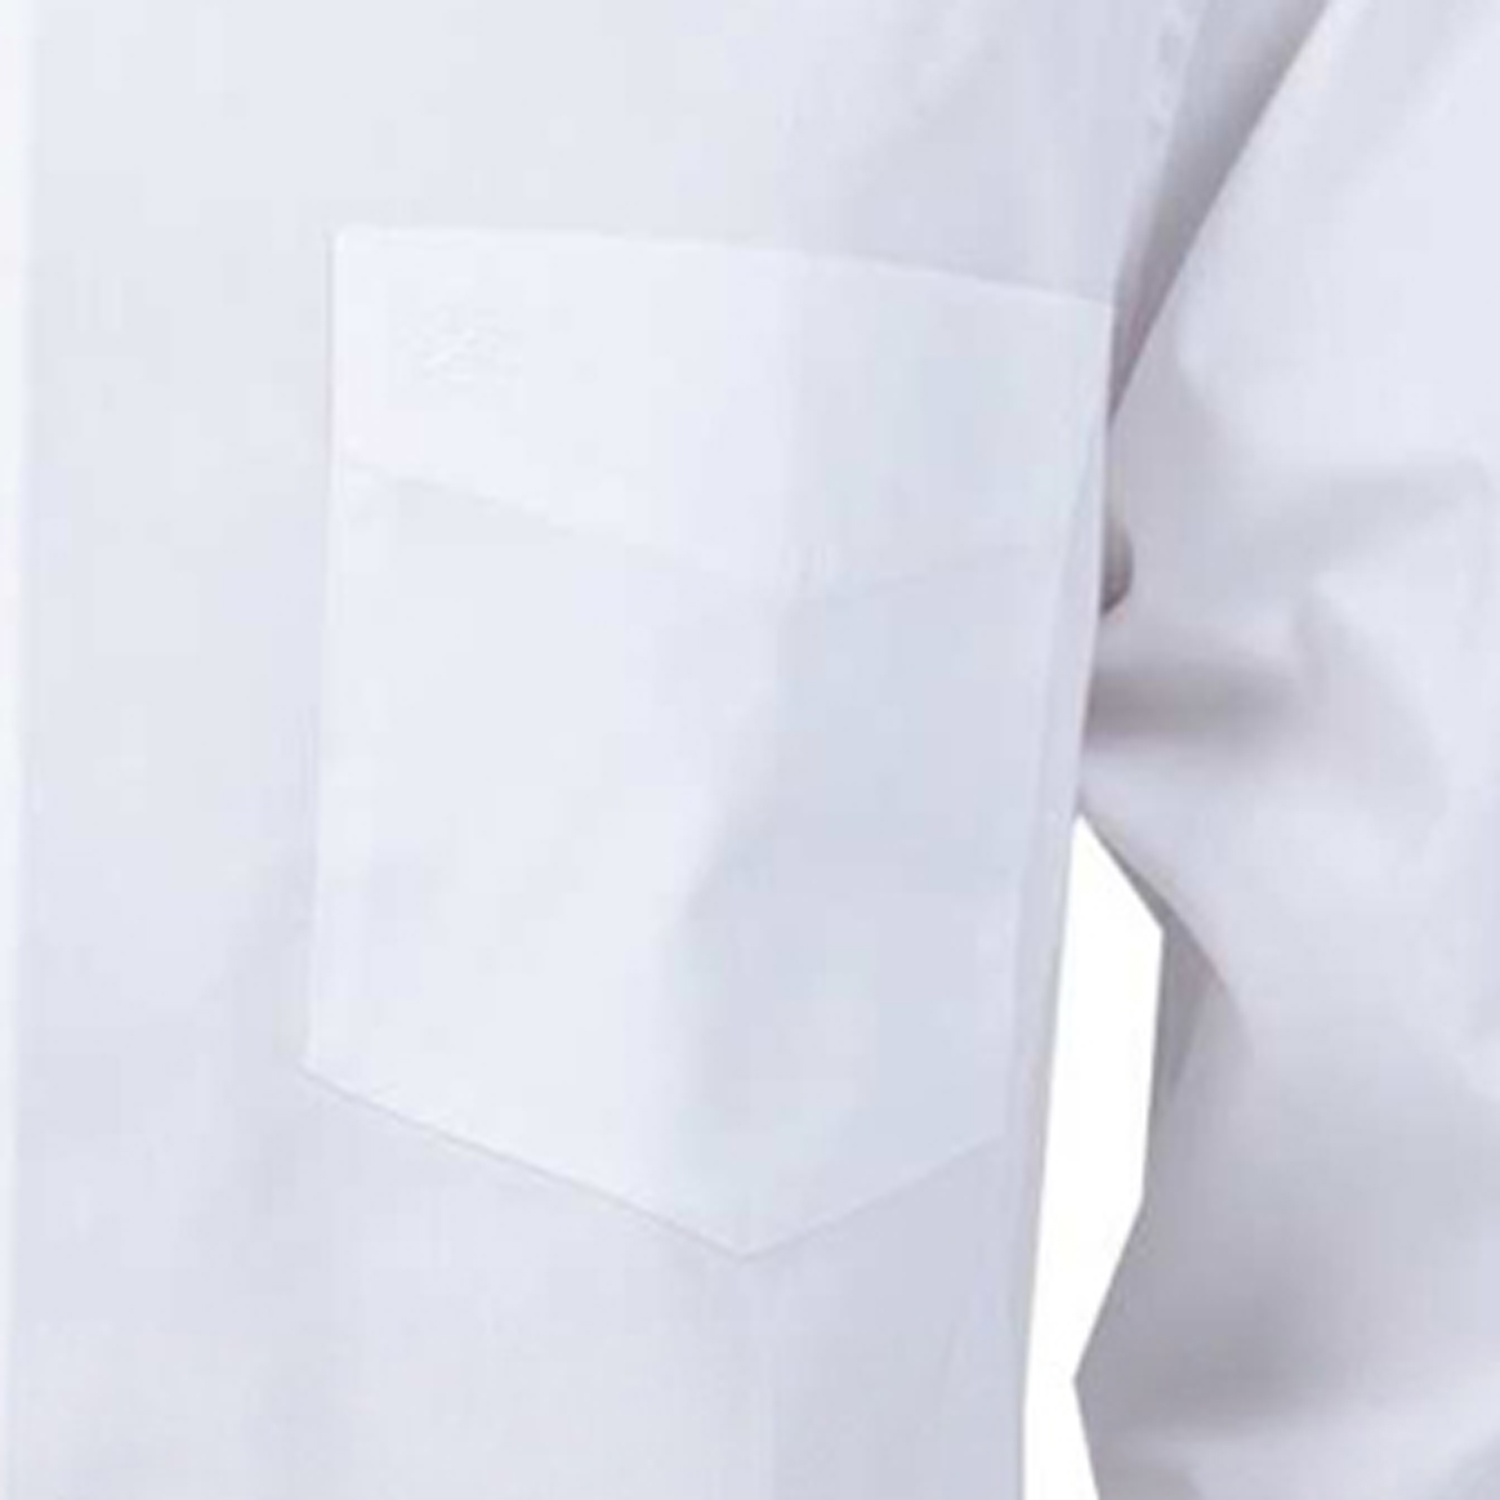 Langarm Hemd weiß von ARRIVEE in großen Größen von XL bis 8XL